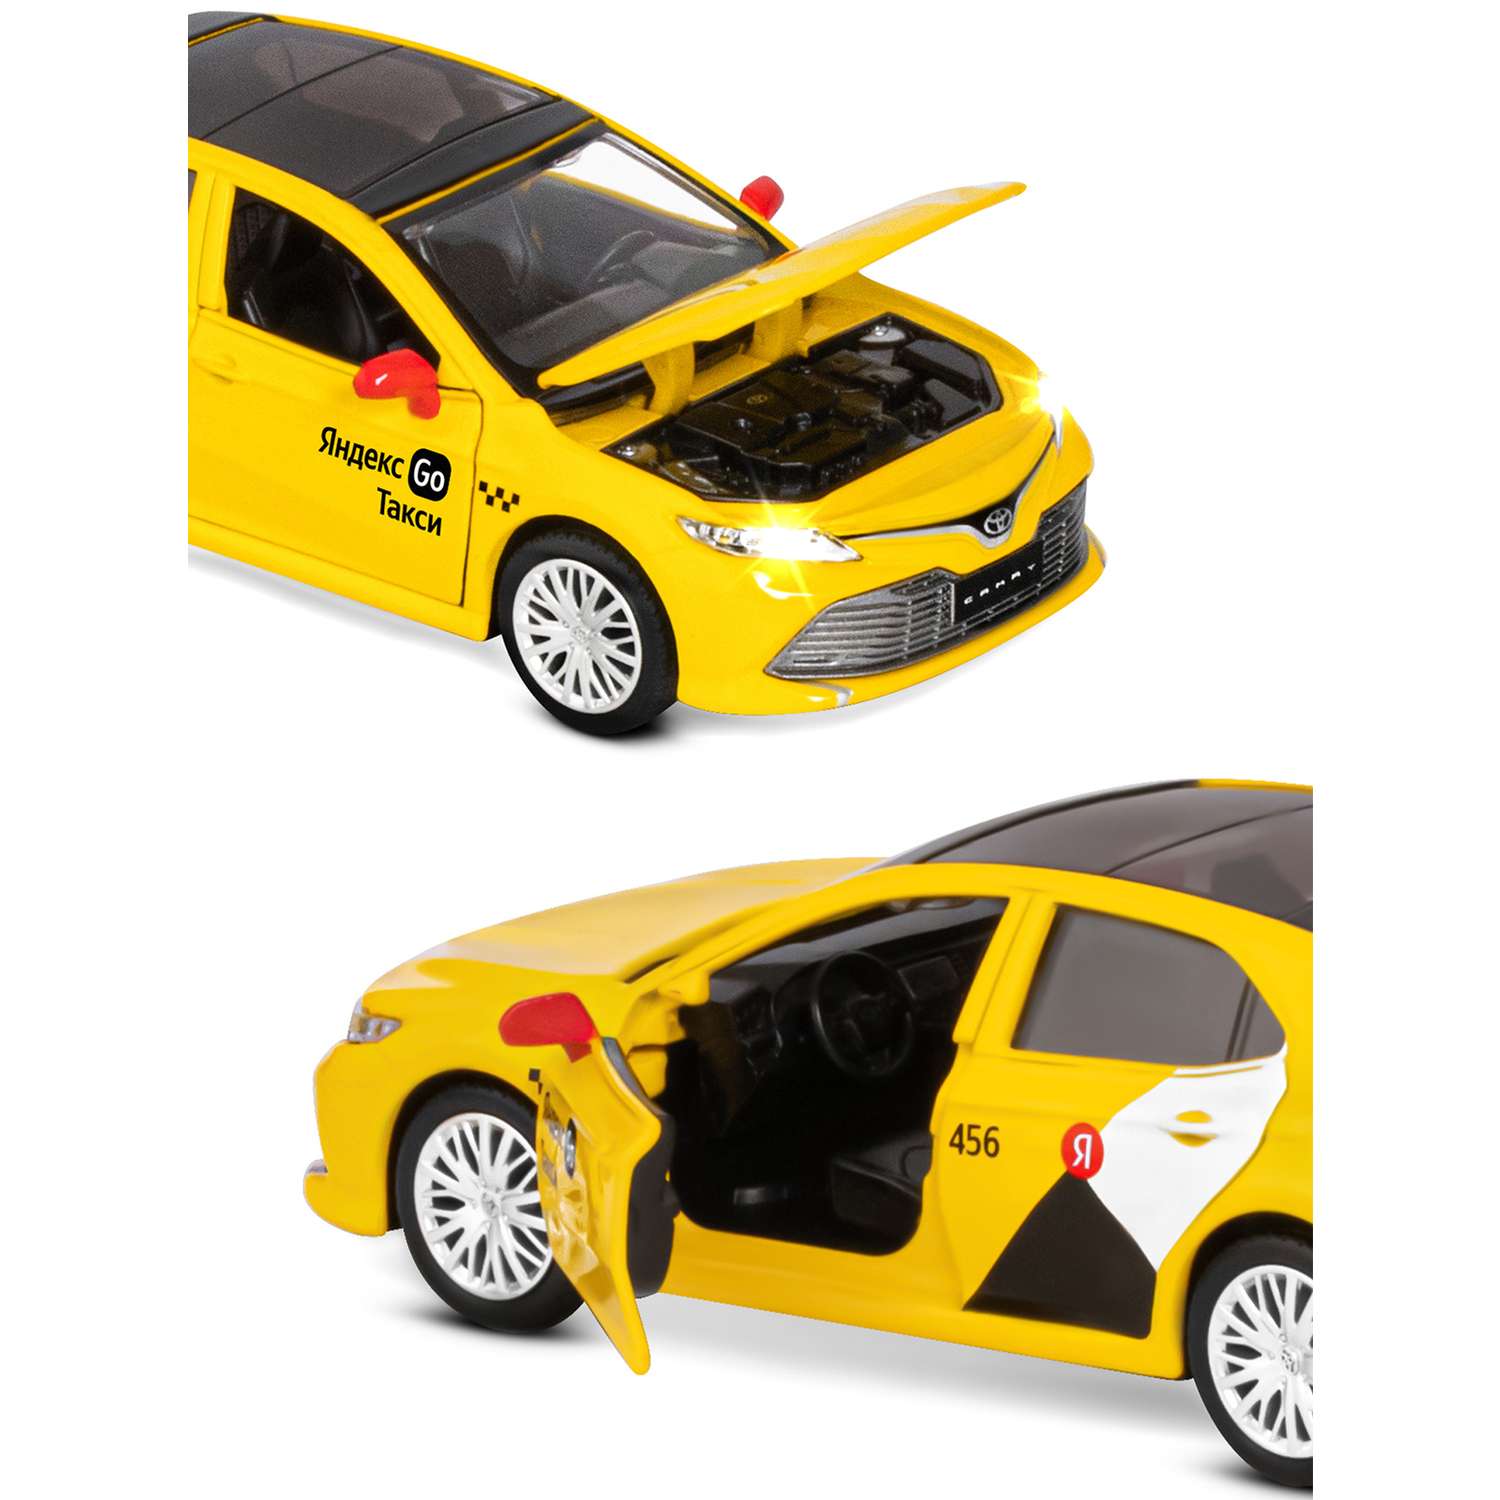 Машинка металлическая Яндекс GO игрушка детская Toyota Camry цвет желтый Озвучено Алисой JB1251482 - фото 9